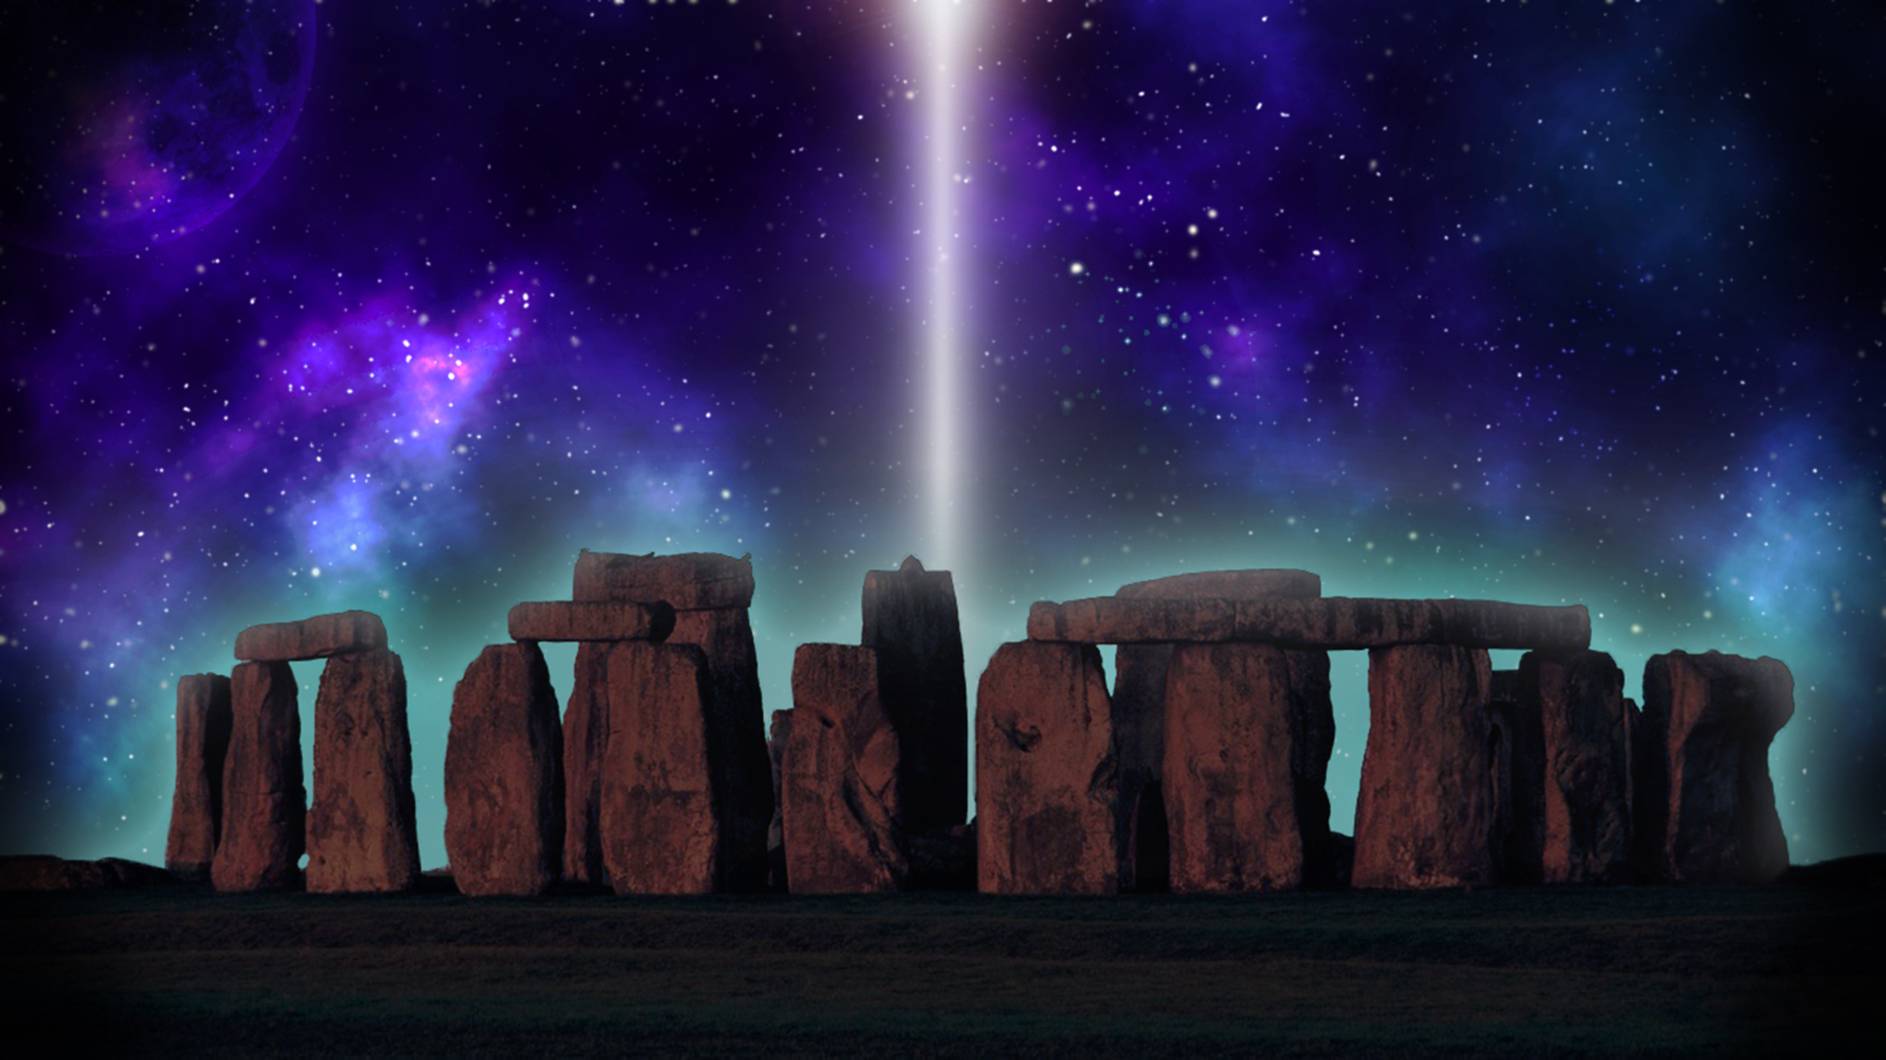 ទំនាក់ទំនងចម្លែករបស់ Stonehenge ។ © ឥណទានរូបភាព៖ Savatodorov | ទទួលបានអាជ្ញាប័ណ្ណពី DreamsTime.com (រូបថតស្តុក/ការប្រើប្រាស់ពាណិជ្ជកម្ម លេខសម្គាល់៖ 106269633)